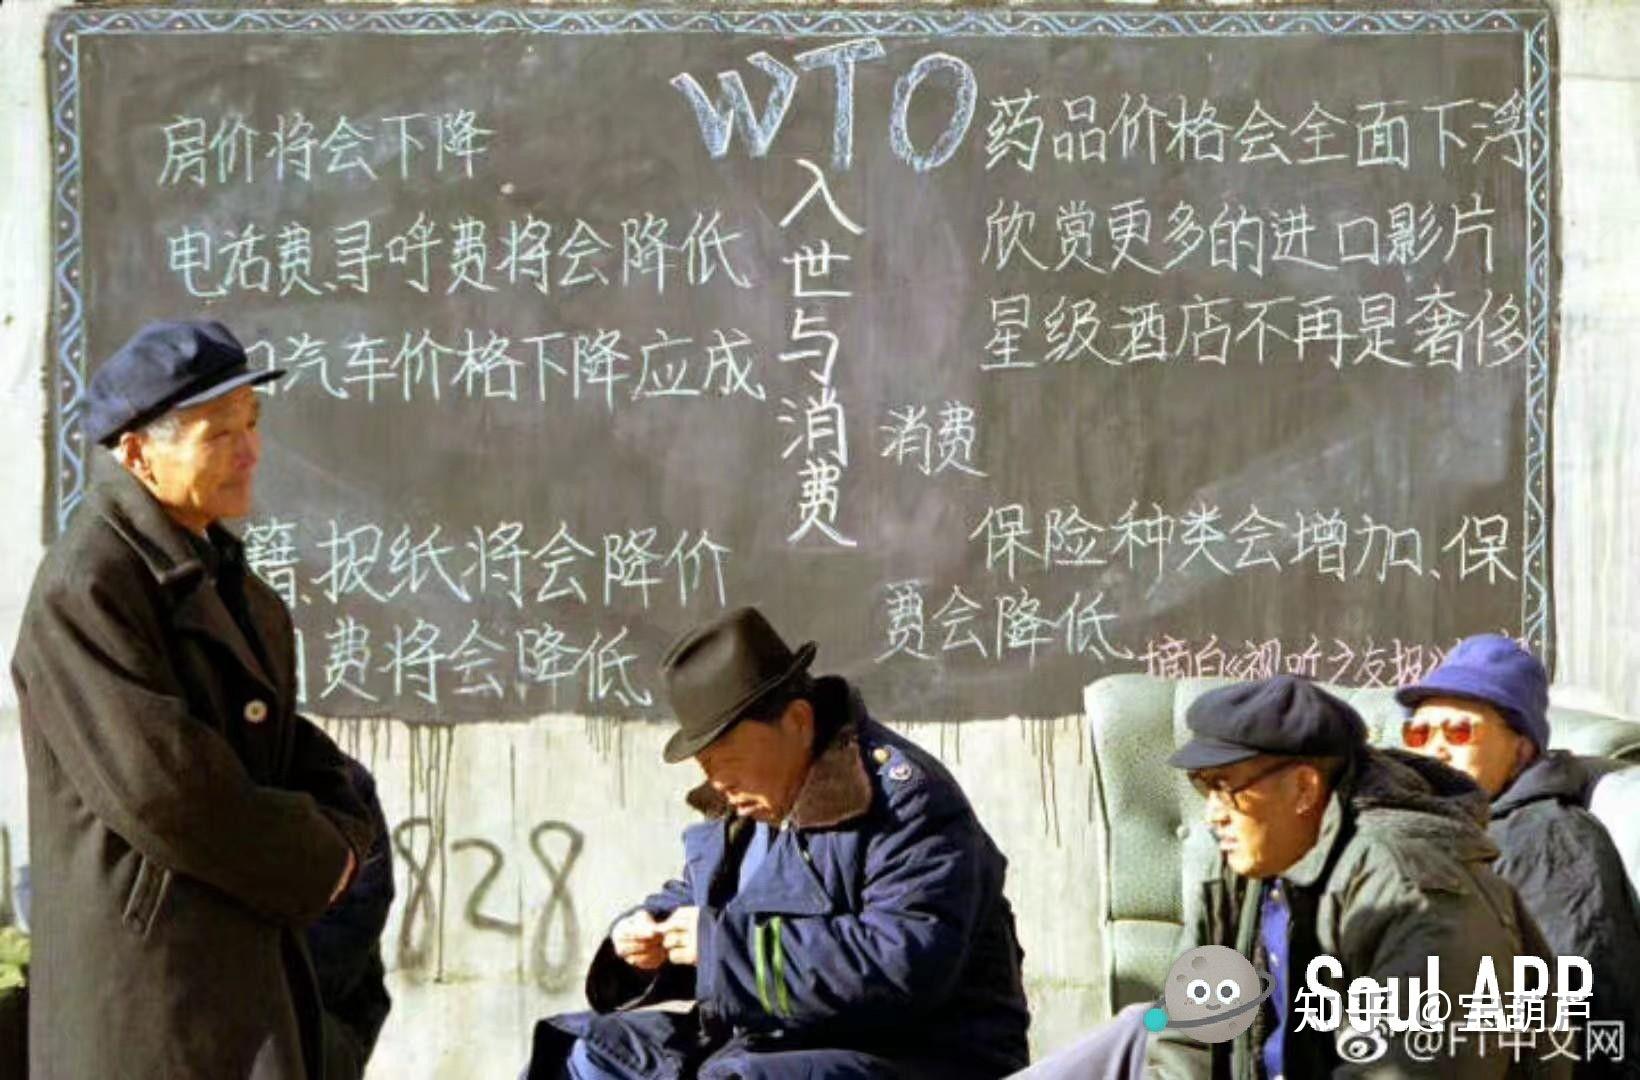 为什么很多说中国没有遵守WTO规则?